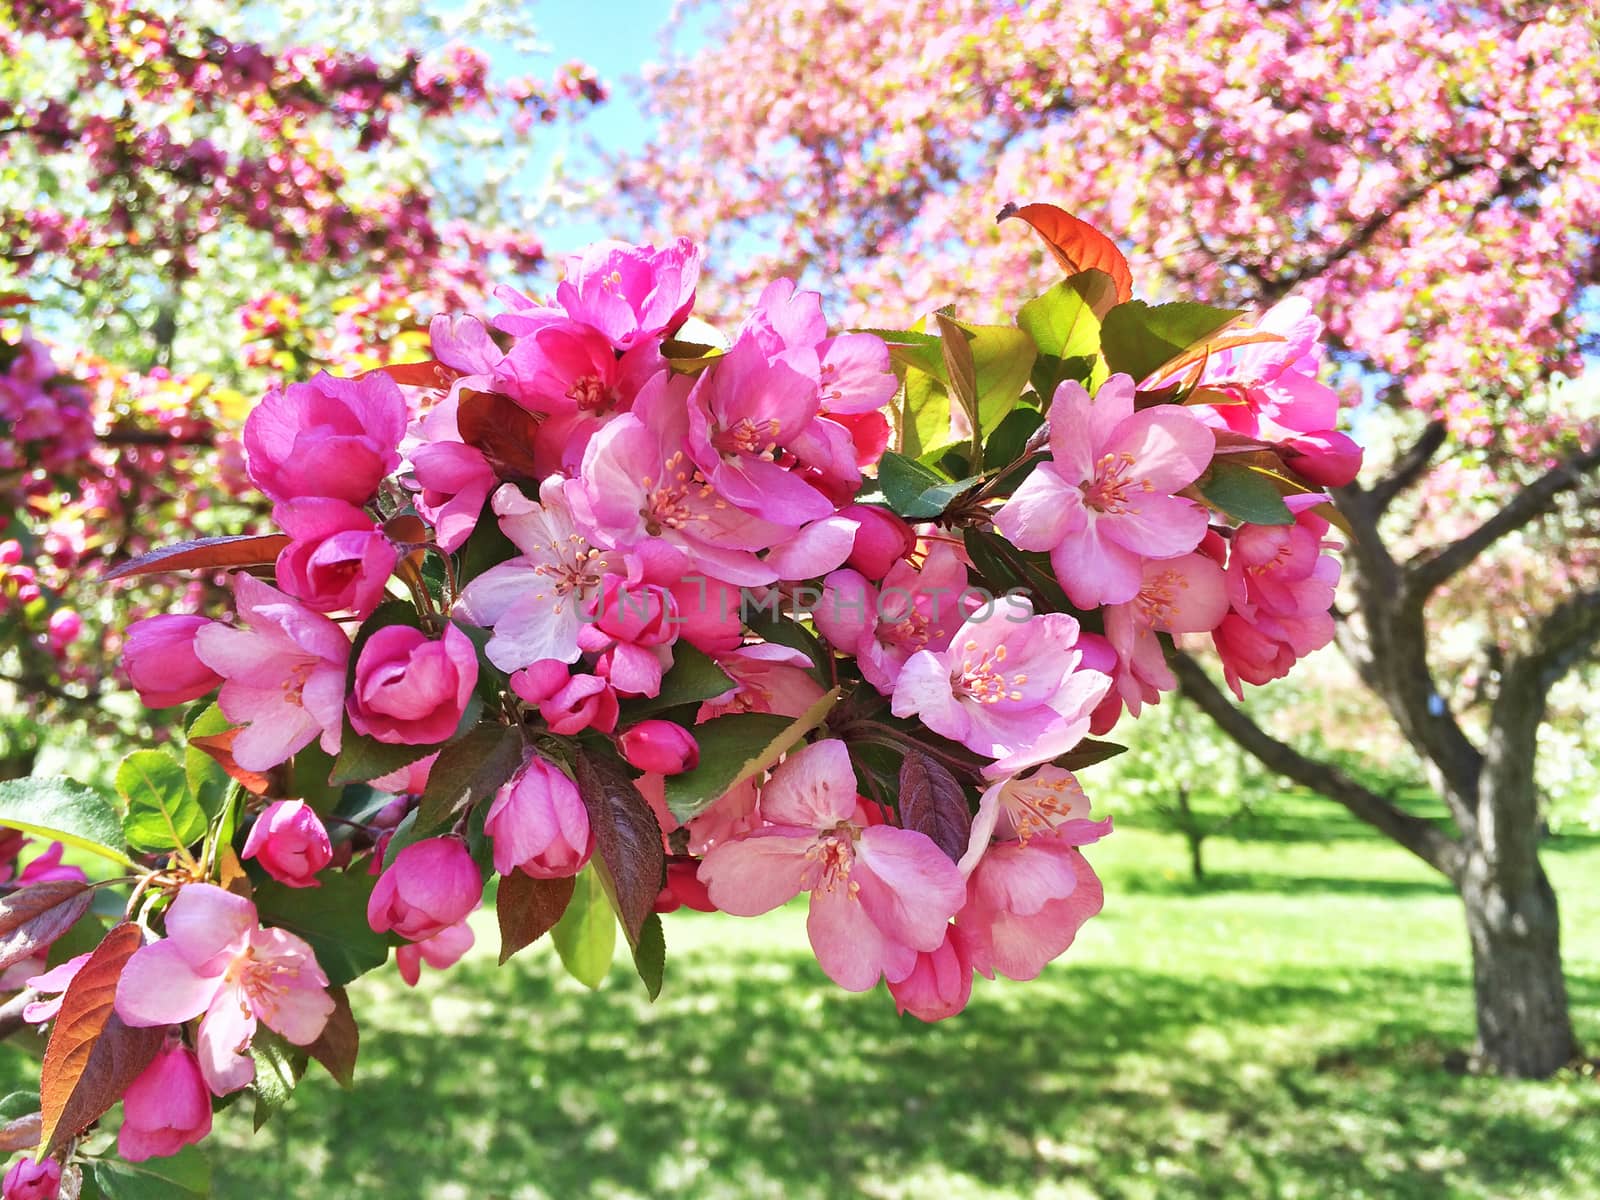 Pink apple tree blossom. Sunny spring garden.